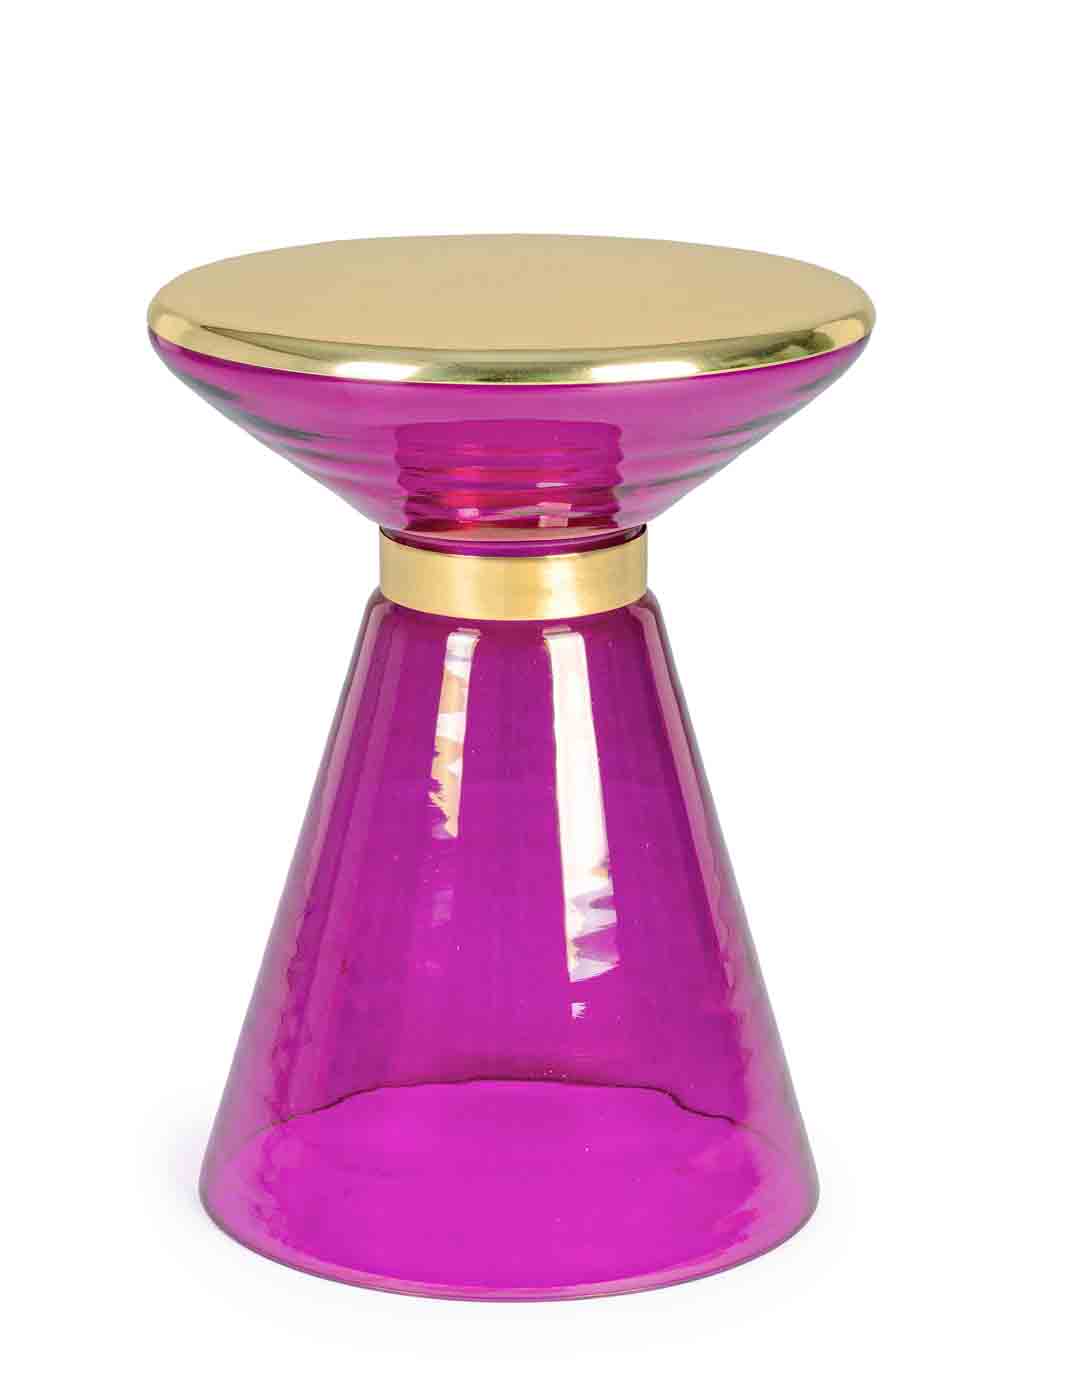 Der Beistelltisch Meriel hat ein modernes Design. Gefertigt wurde der Tisch aus Glas, die Oberfläche ist aus Messing vergoldetem Metall. Der Tisch hat einen Rosa Farbton.